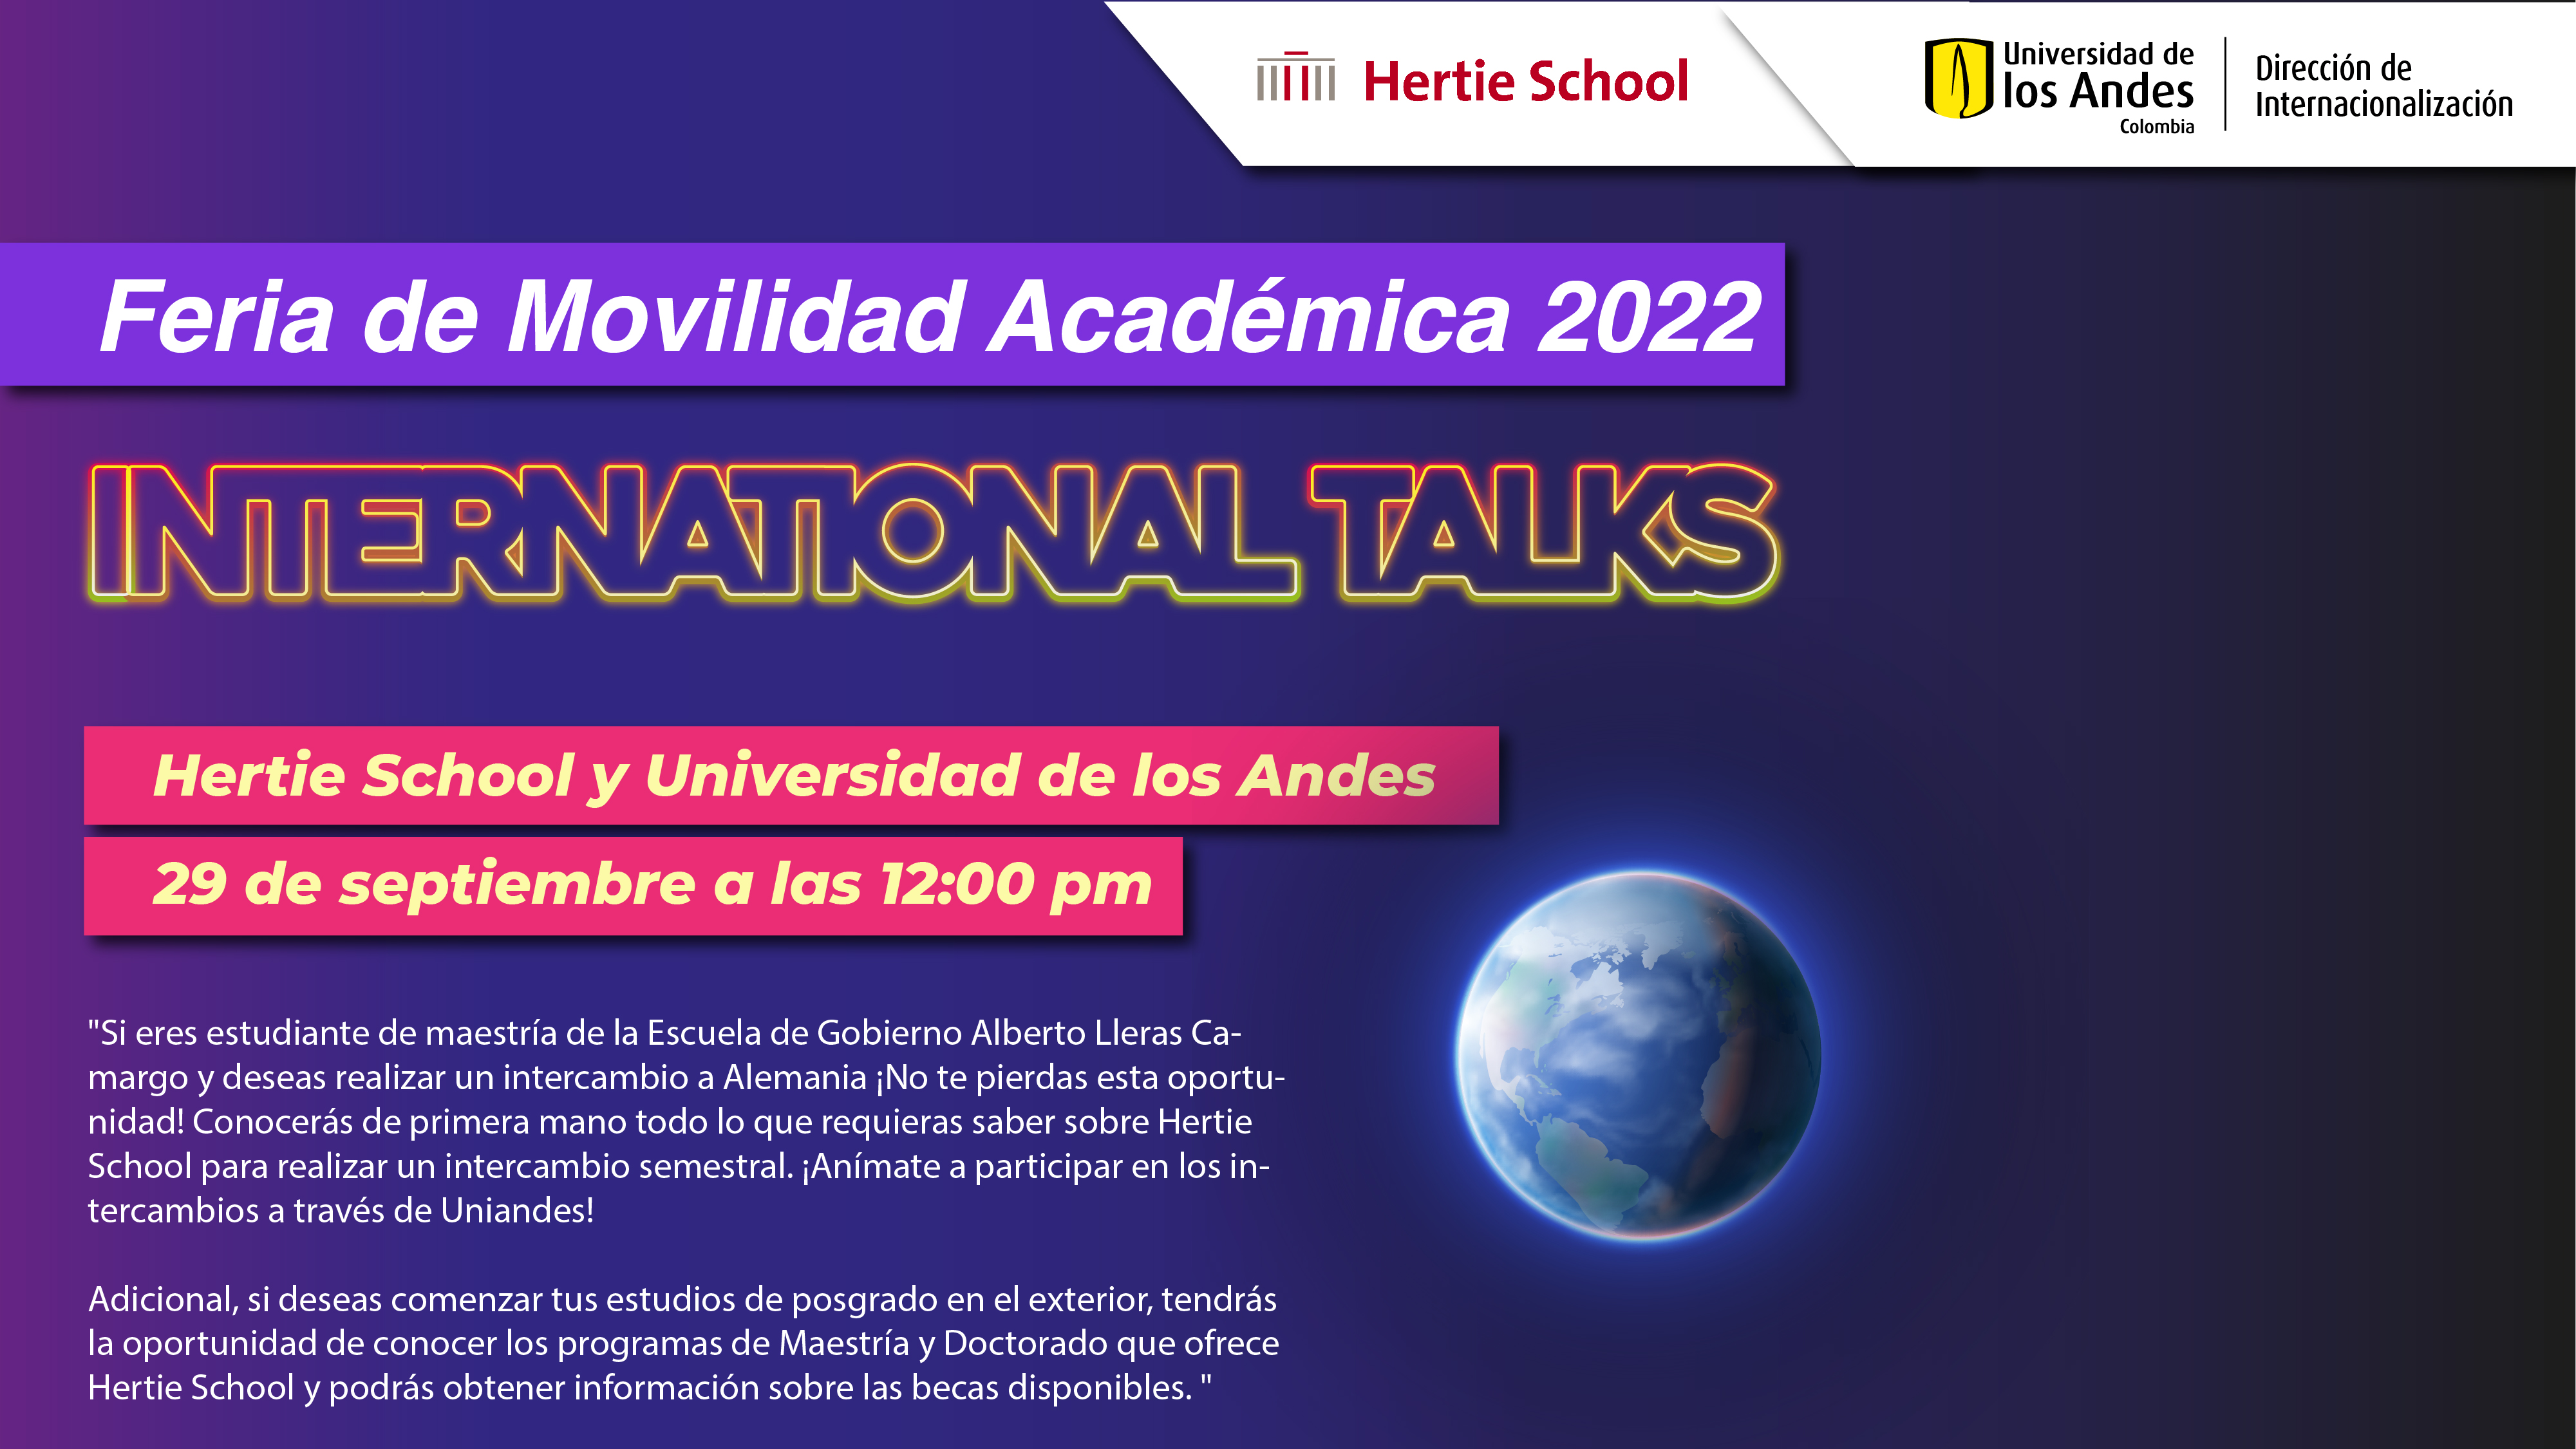 Hertie School y Universidad de los Andes